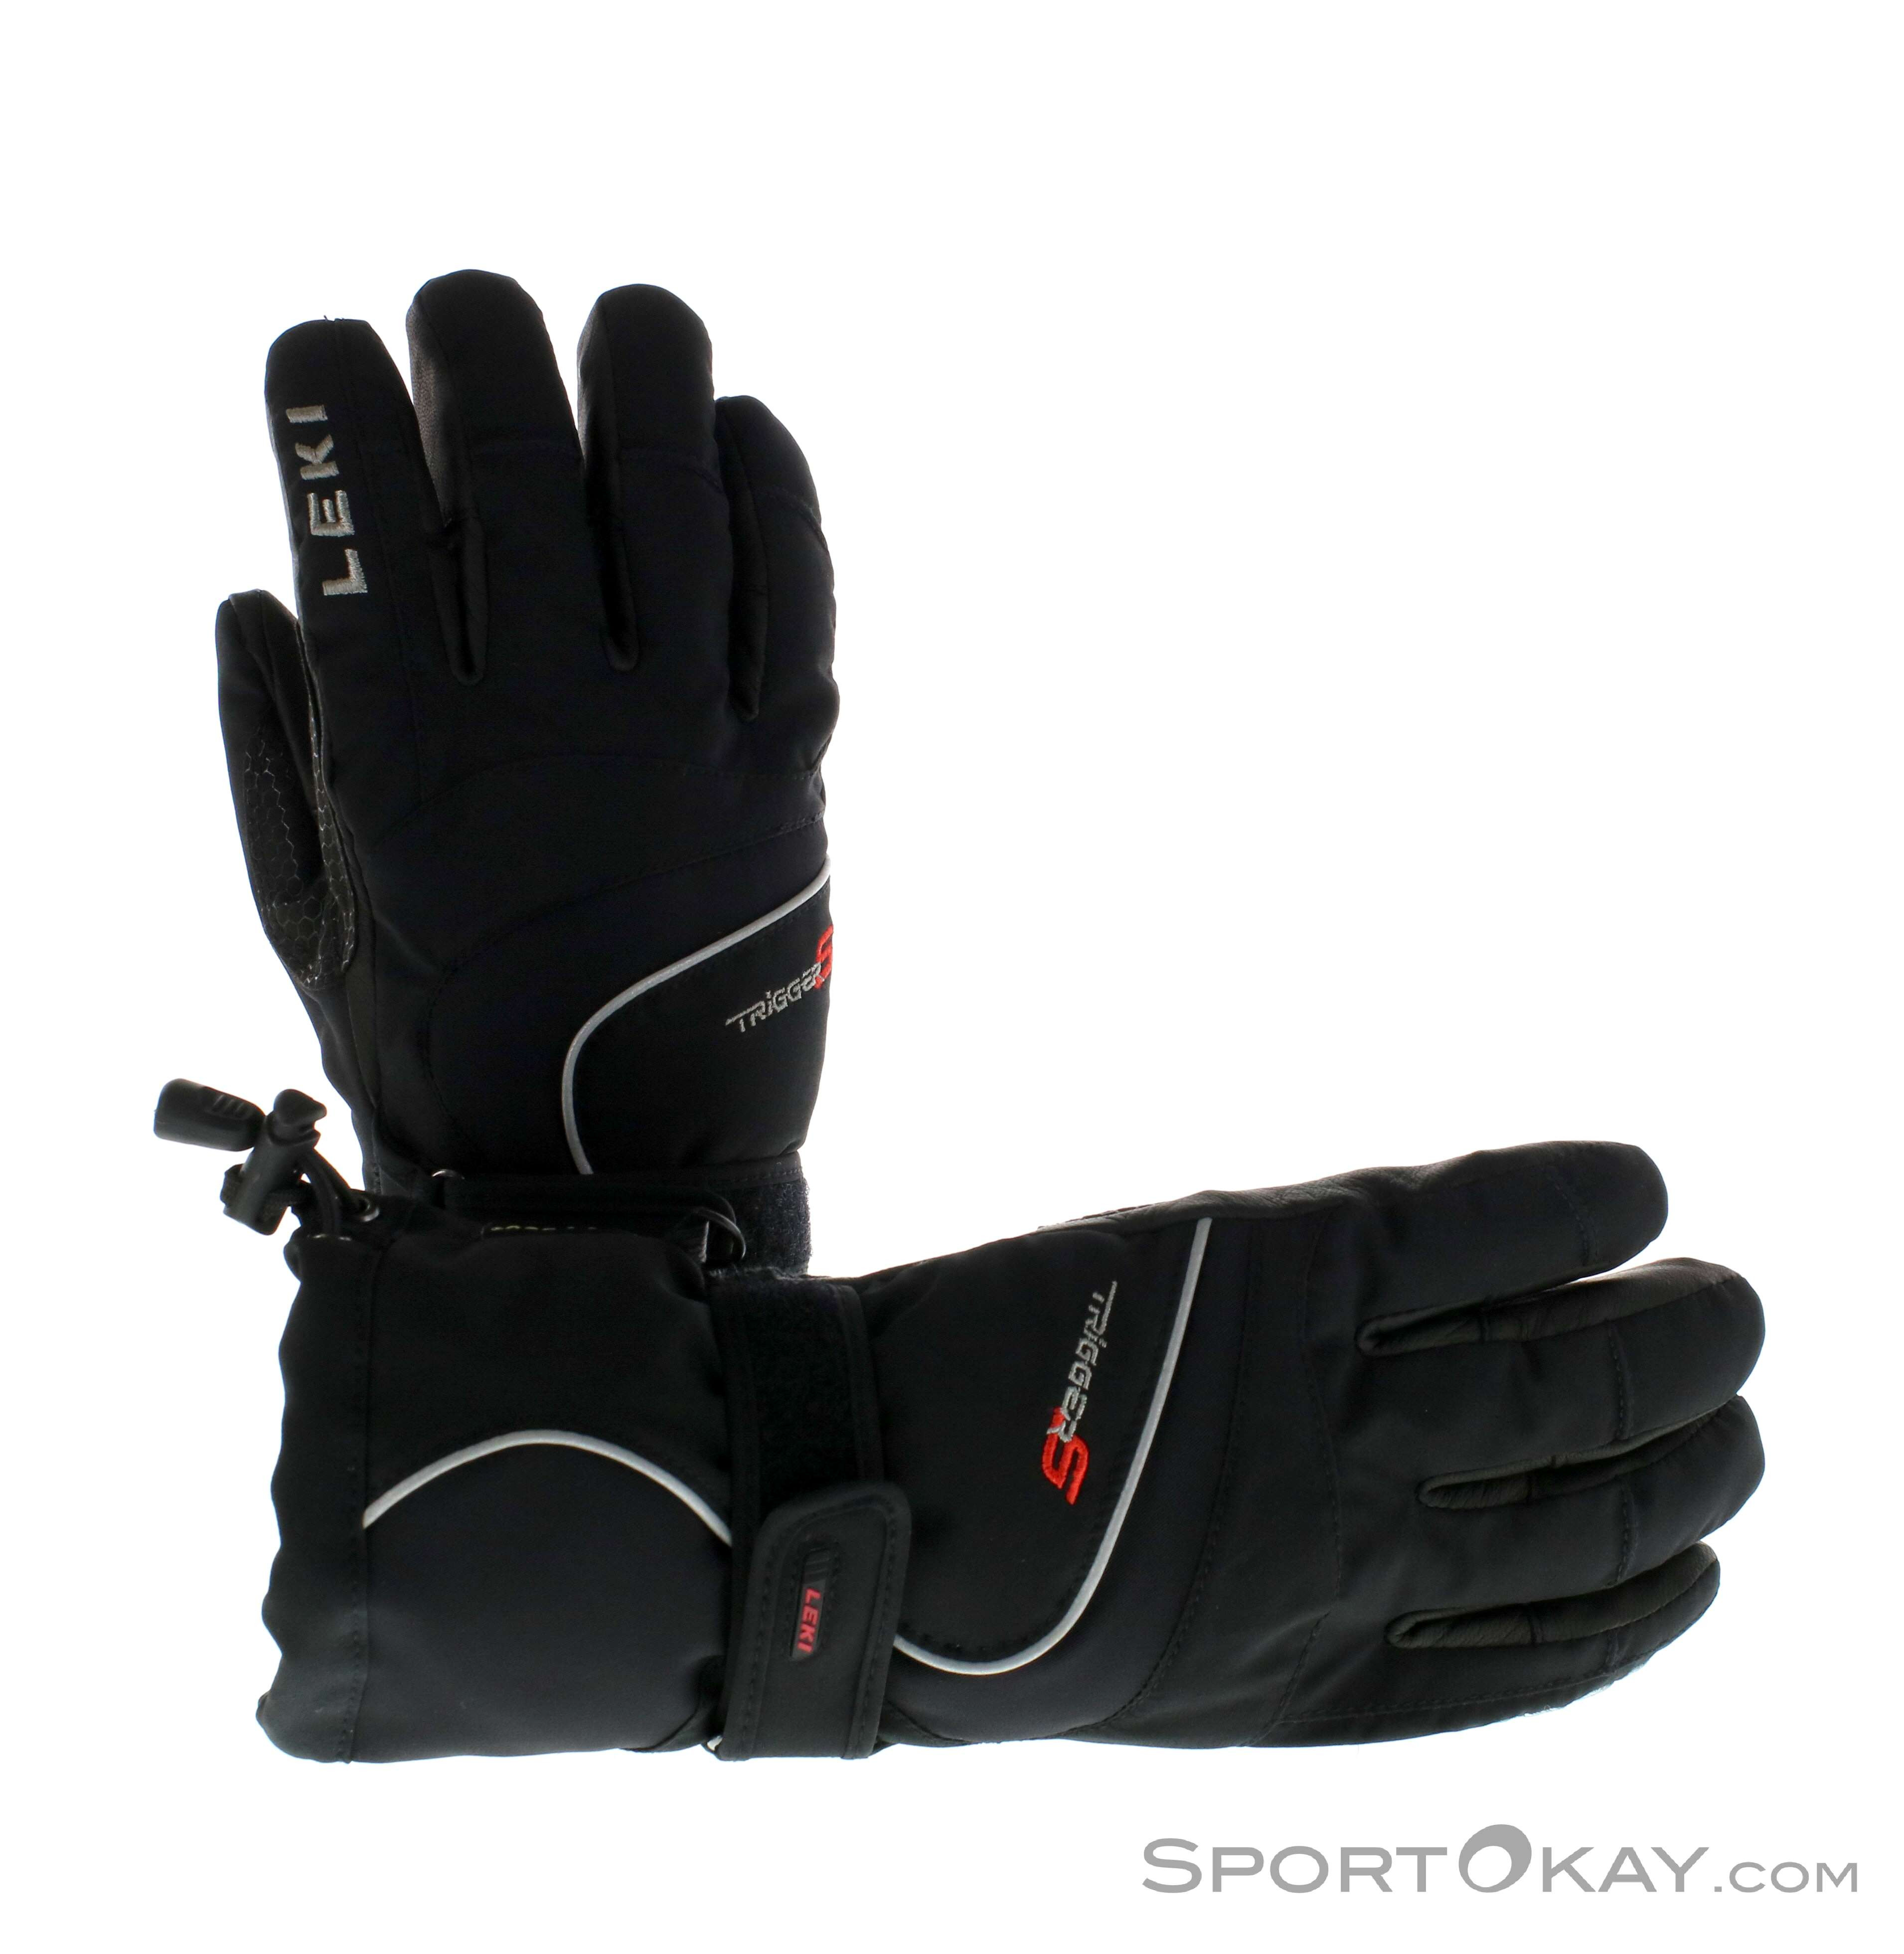 NEW $120 Leki Womens Core S GTX Goretex Insulated Ski Gloves Ladies White Black 